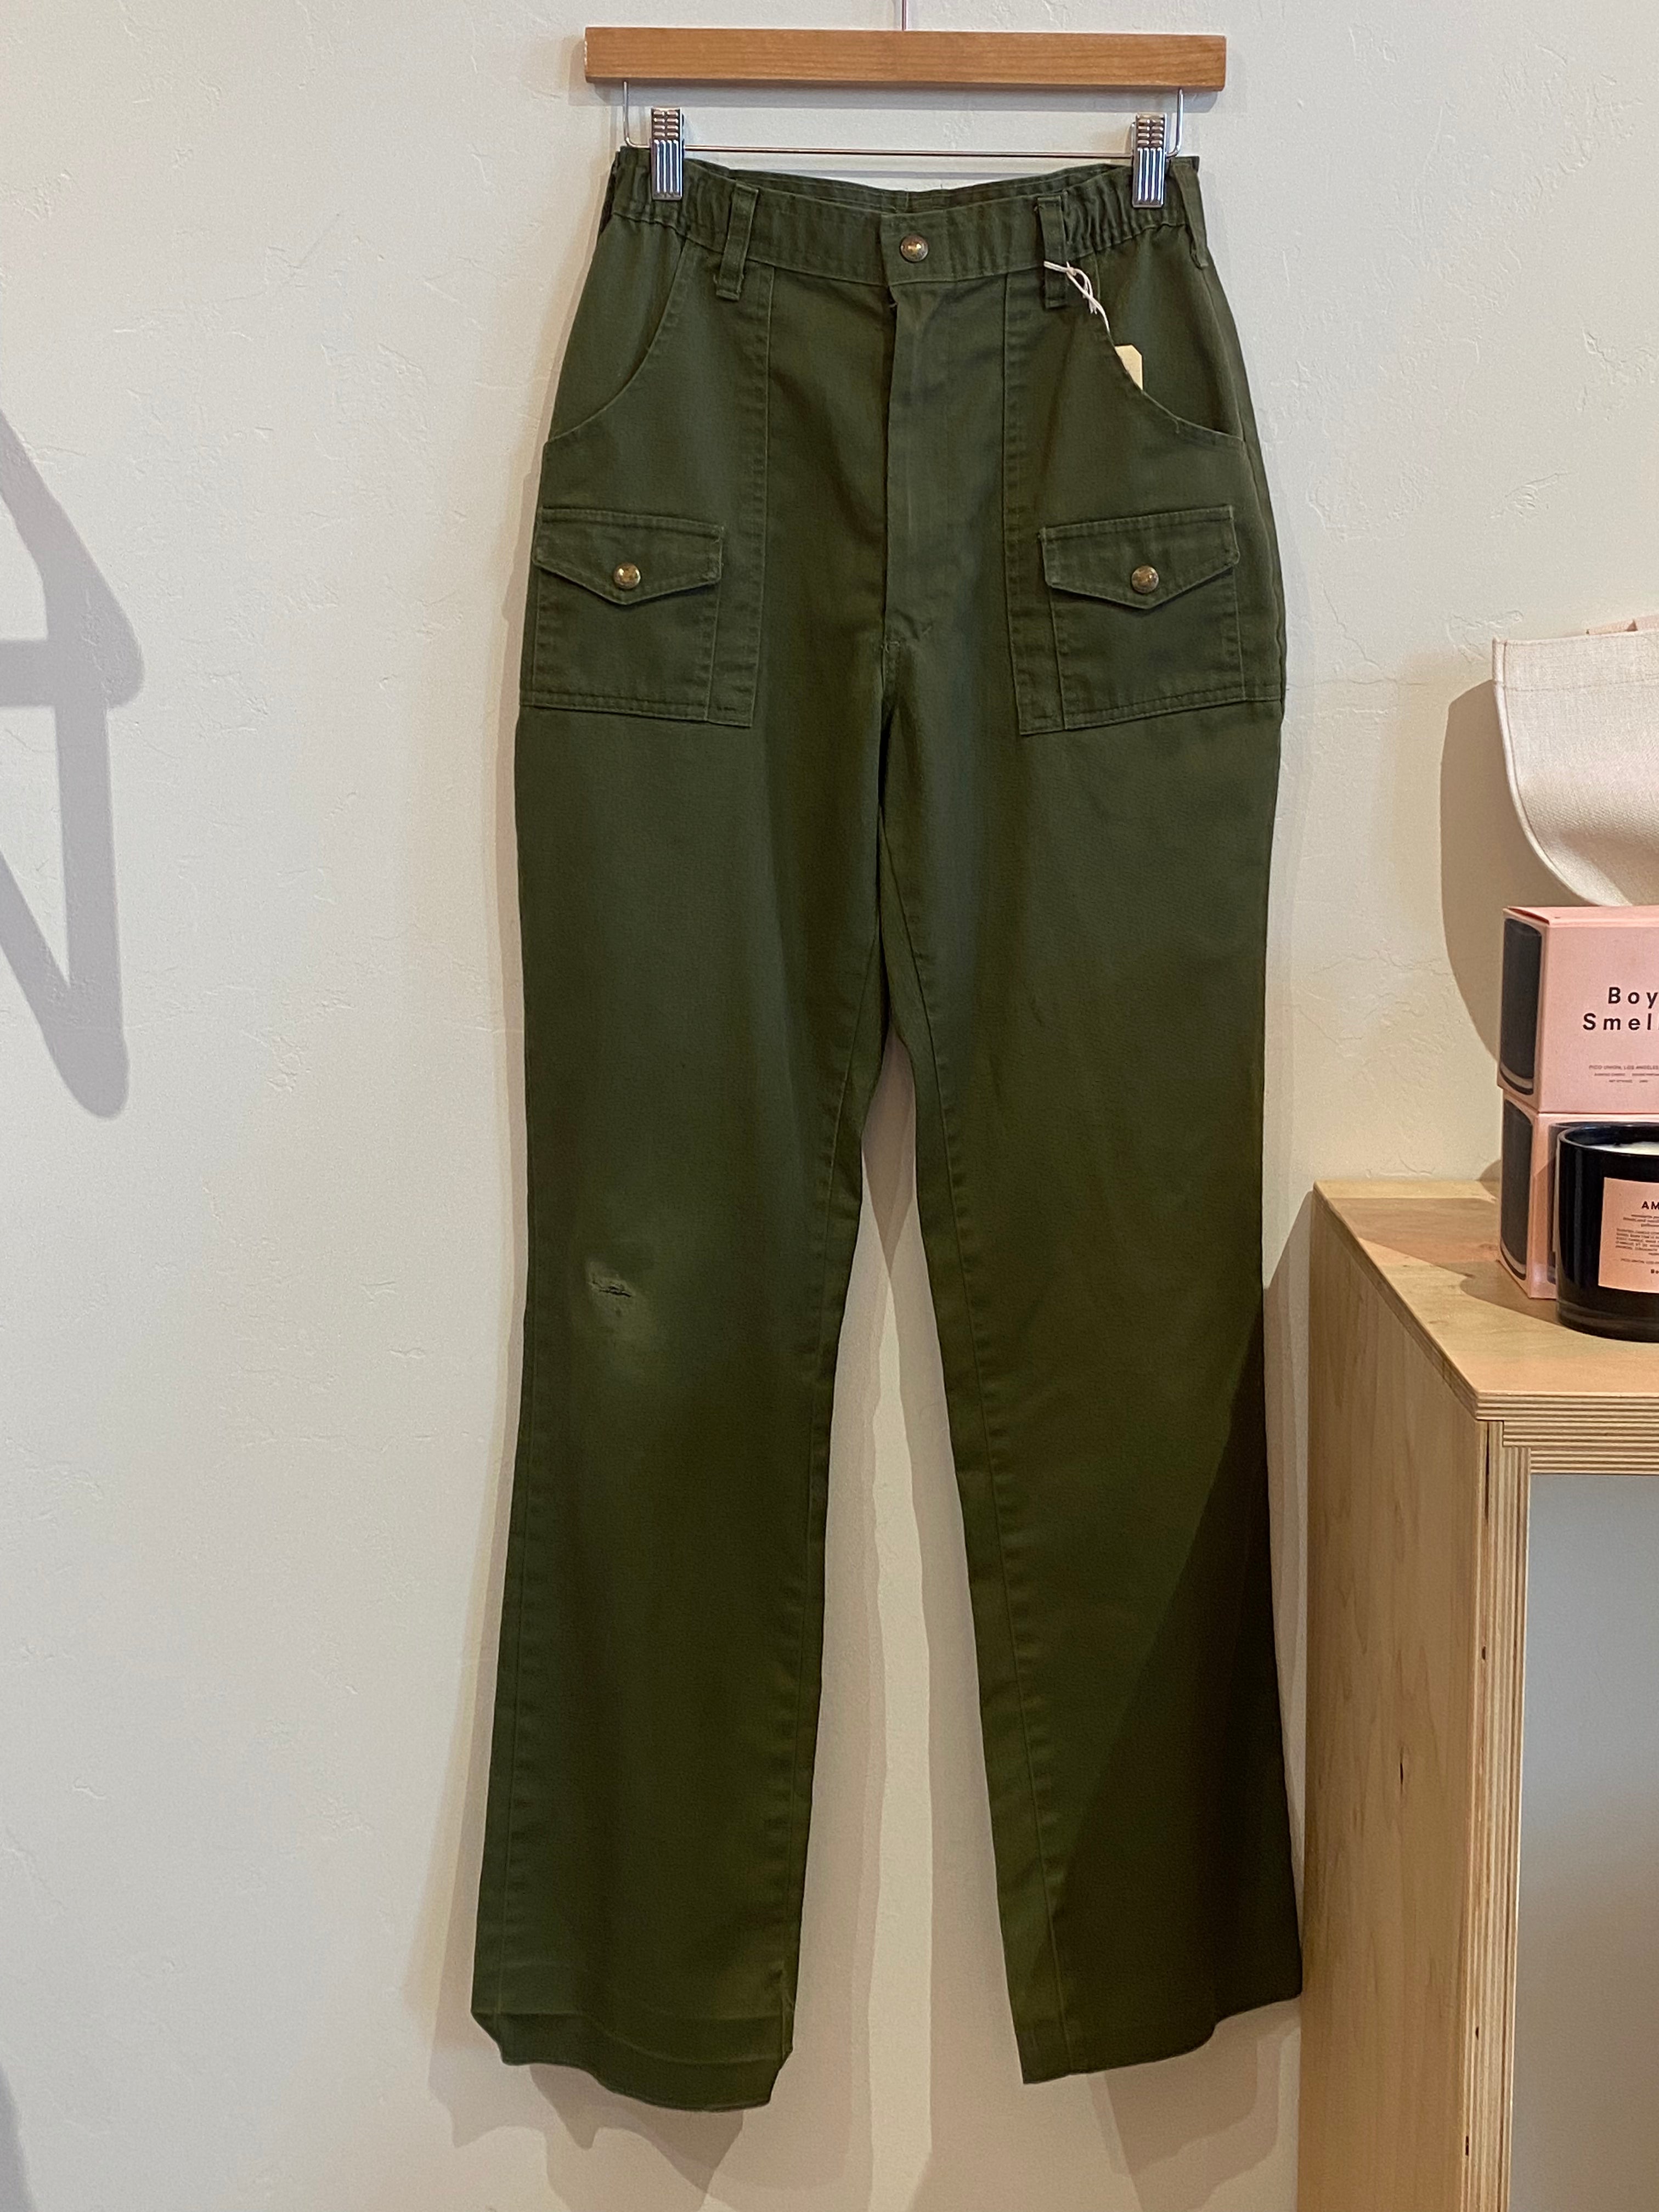 Vintage Boy Scout Pants - 27x32 – el be goods